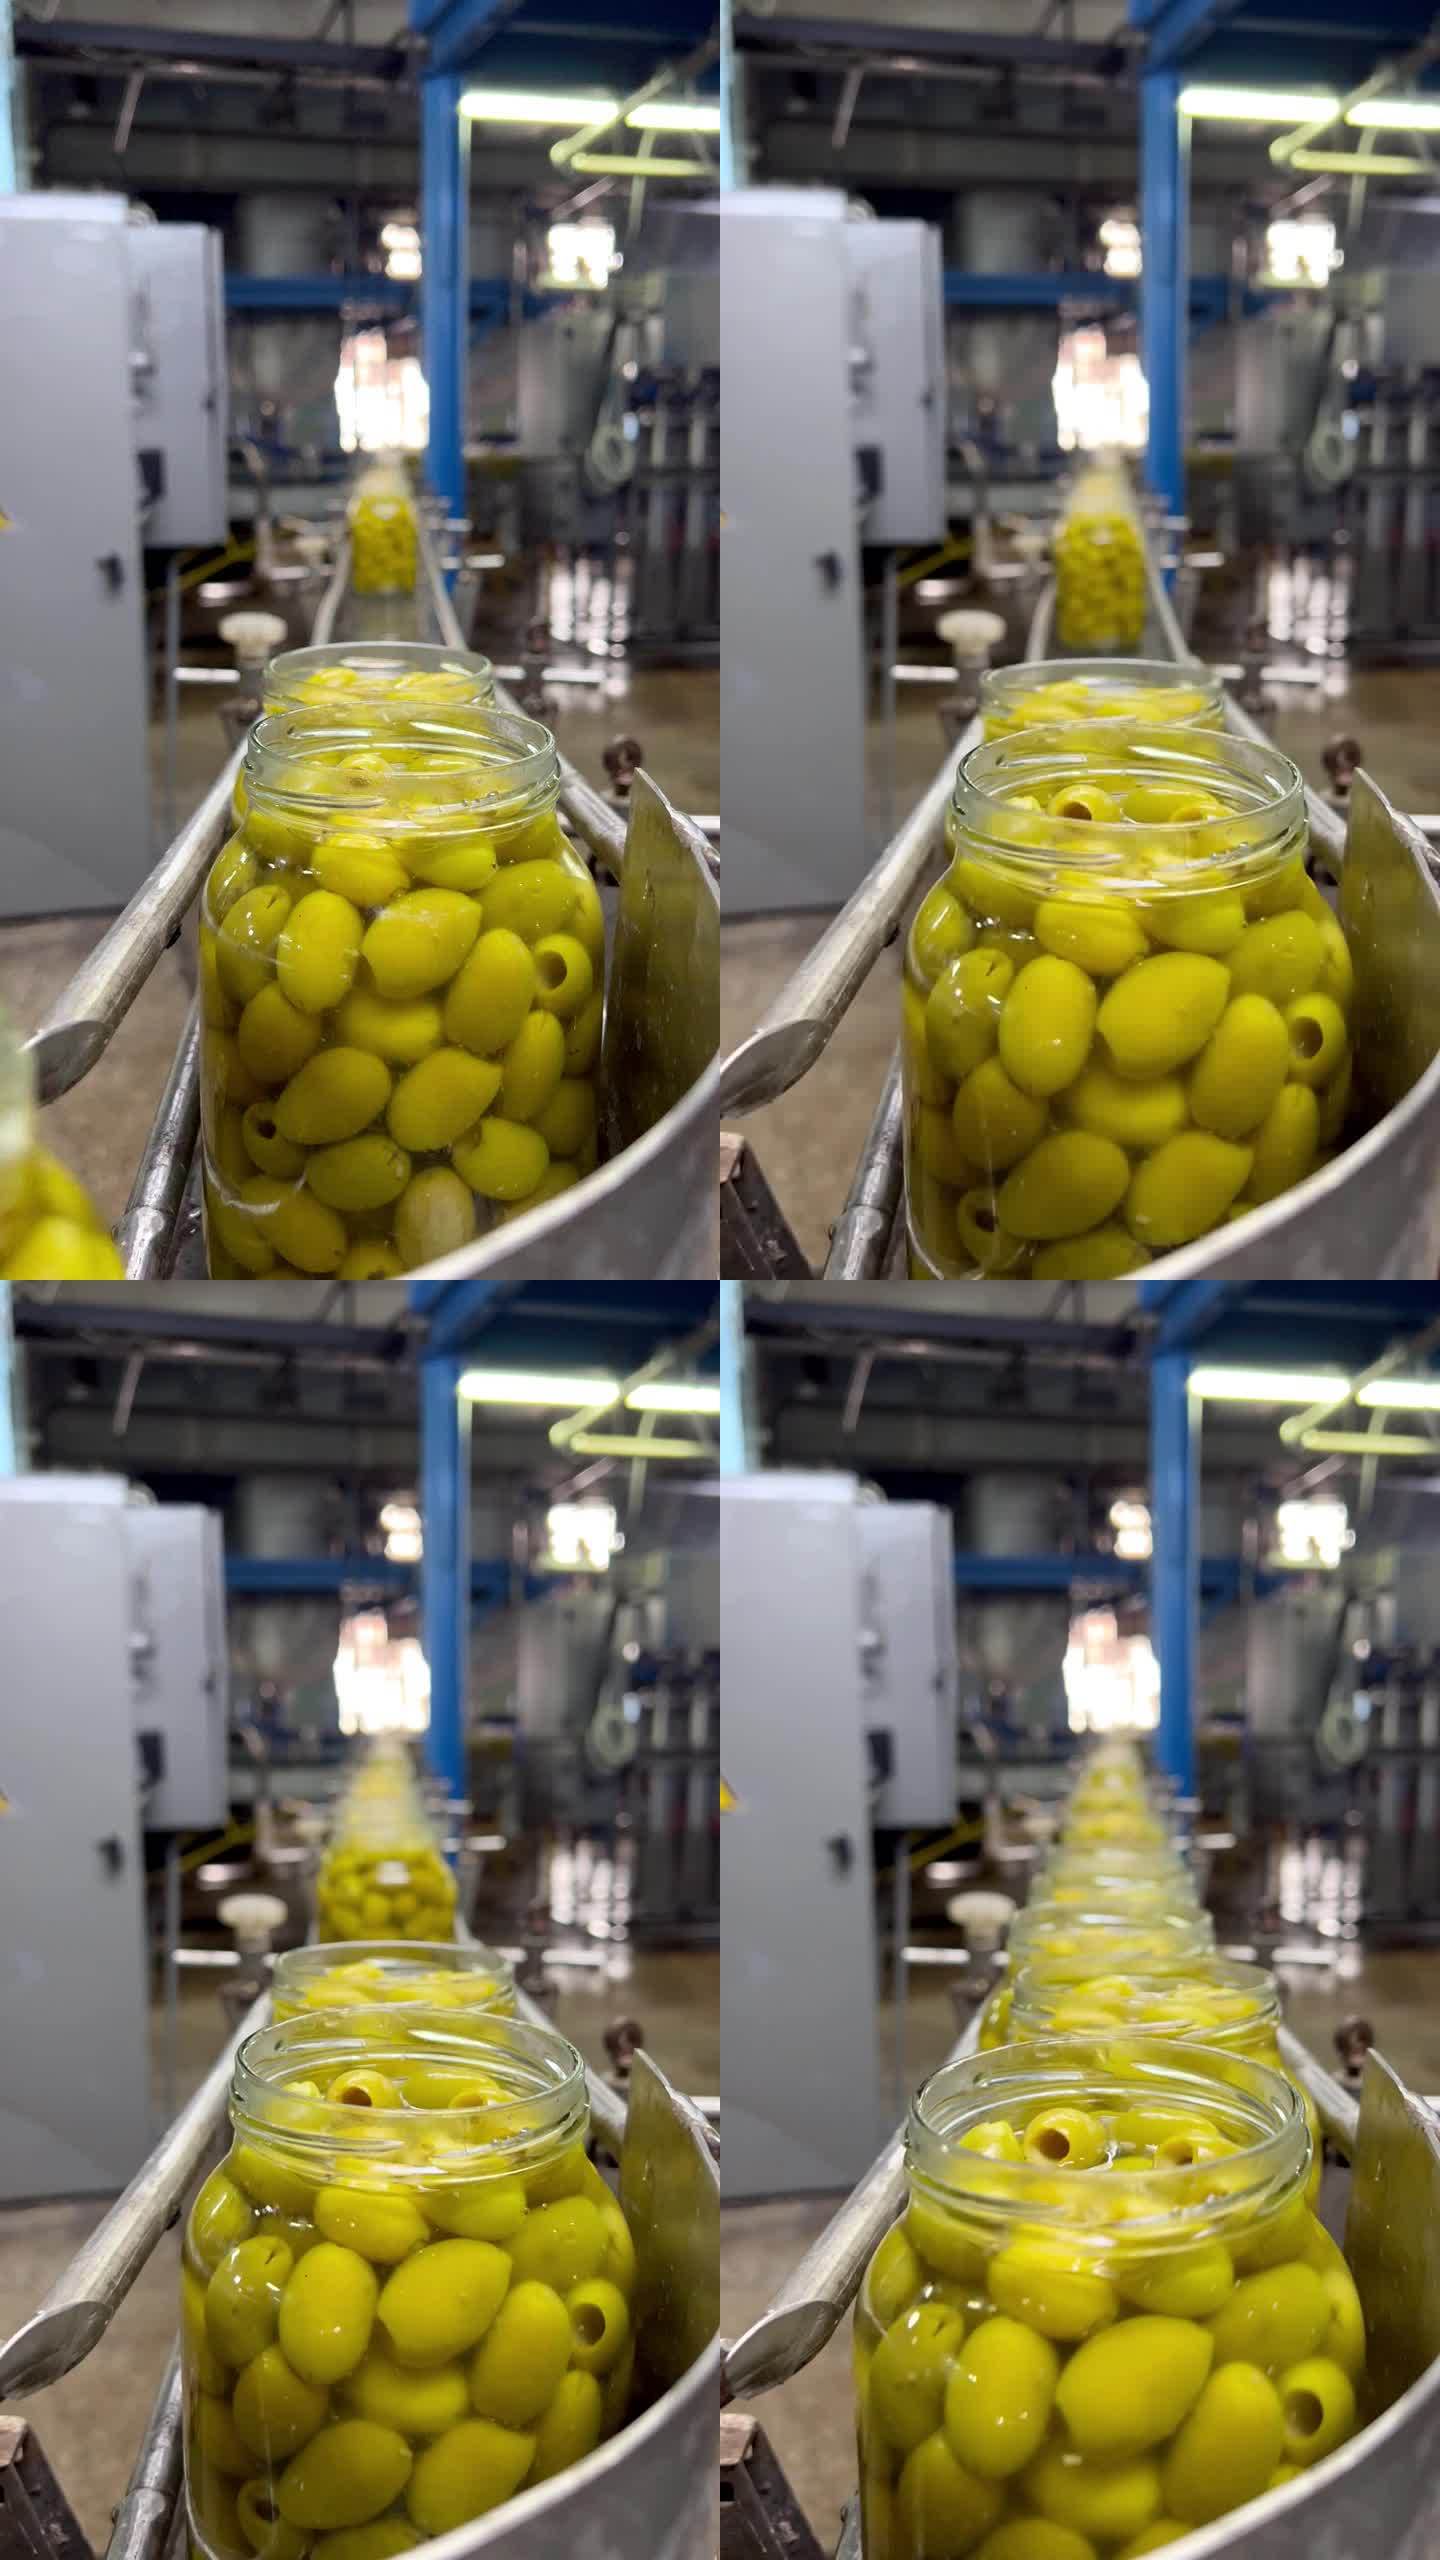 传送带上的罐子里装着橄榄。